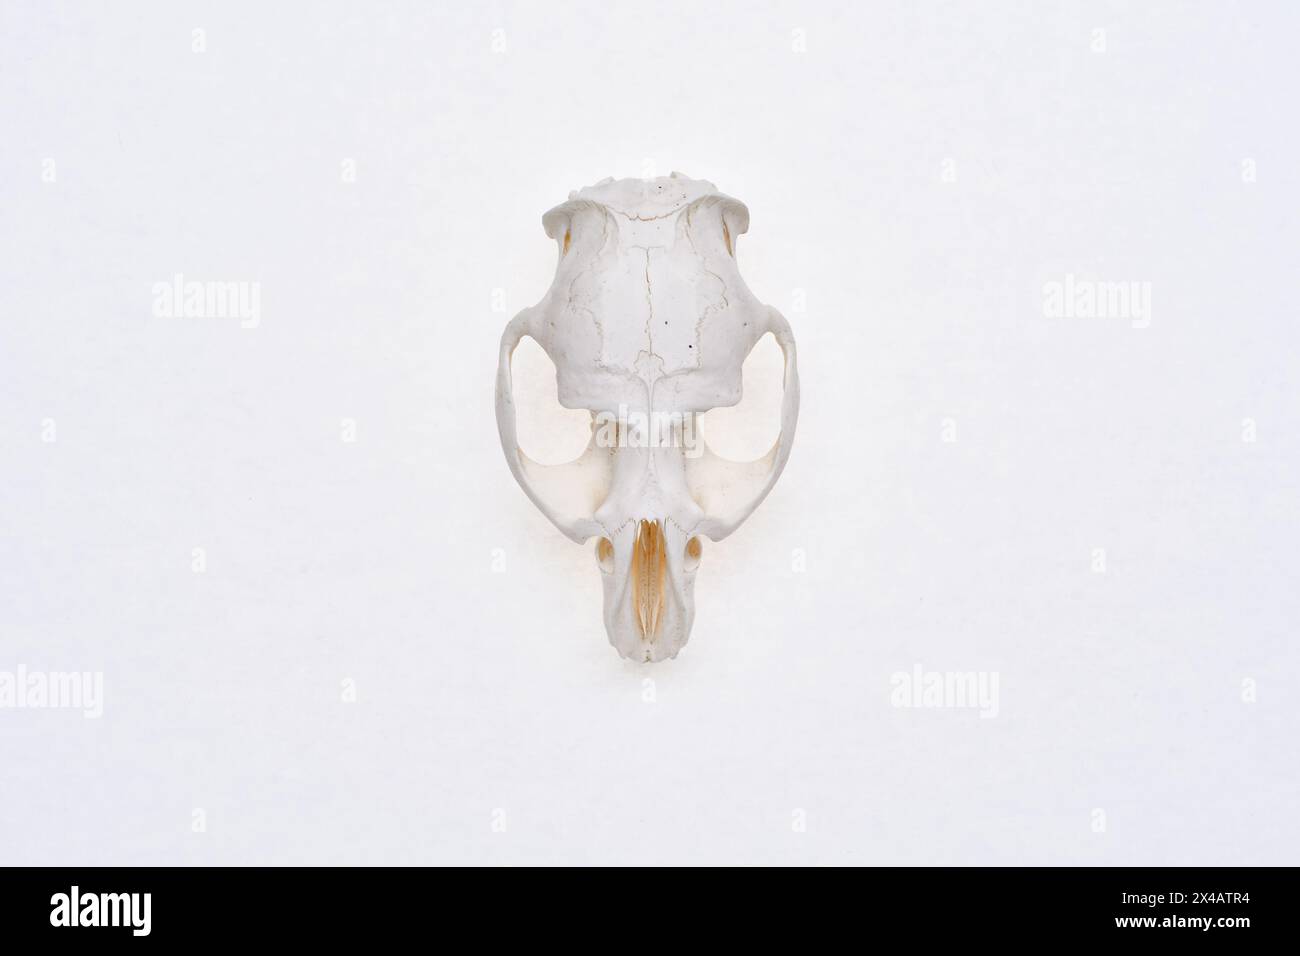 Vue de dessus du crâne de lièvre sur un fond blanc. Rongeur - Lepus timidus. OS de tête de petit animal. Banque D'Images